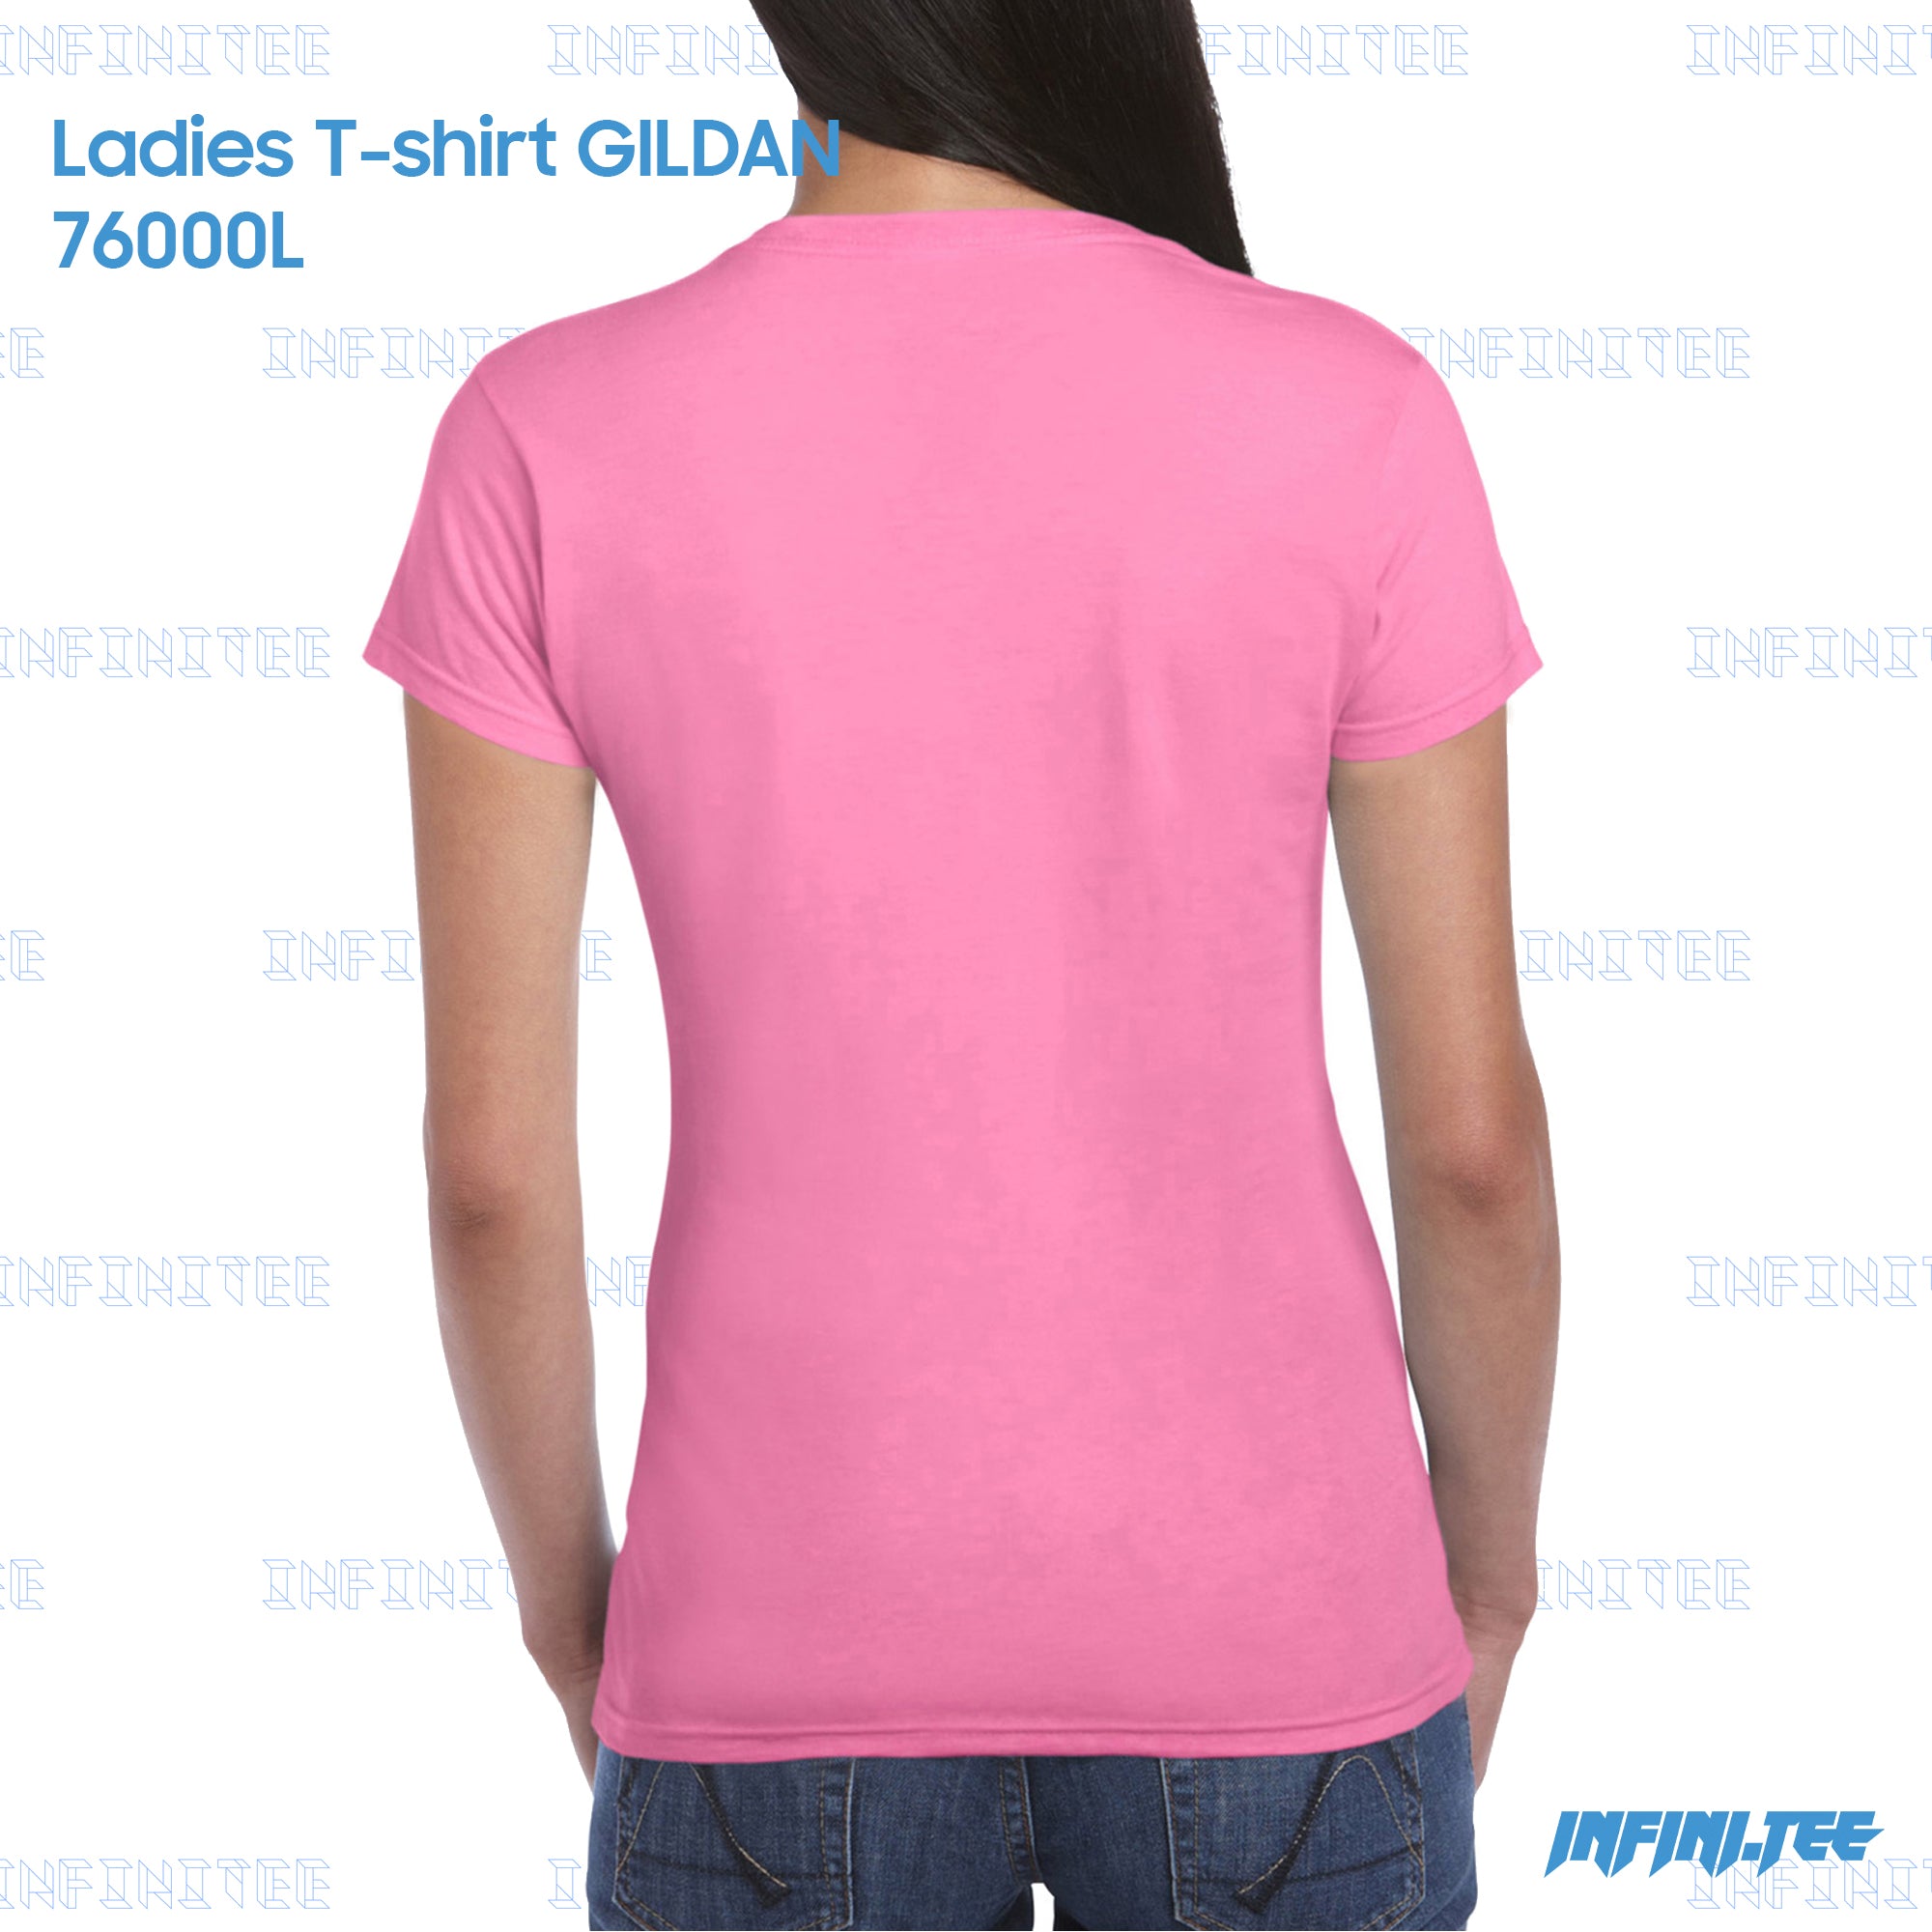 Ladies T-shirt 76000L GILDAN - AZALEA